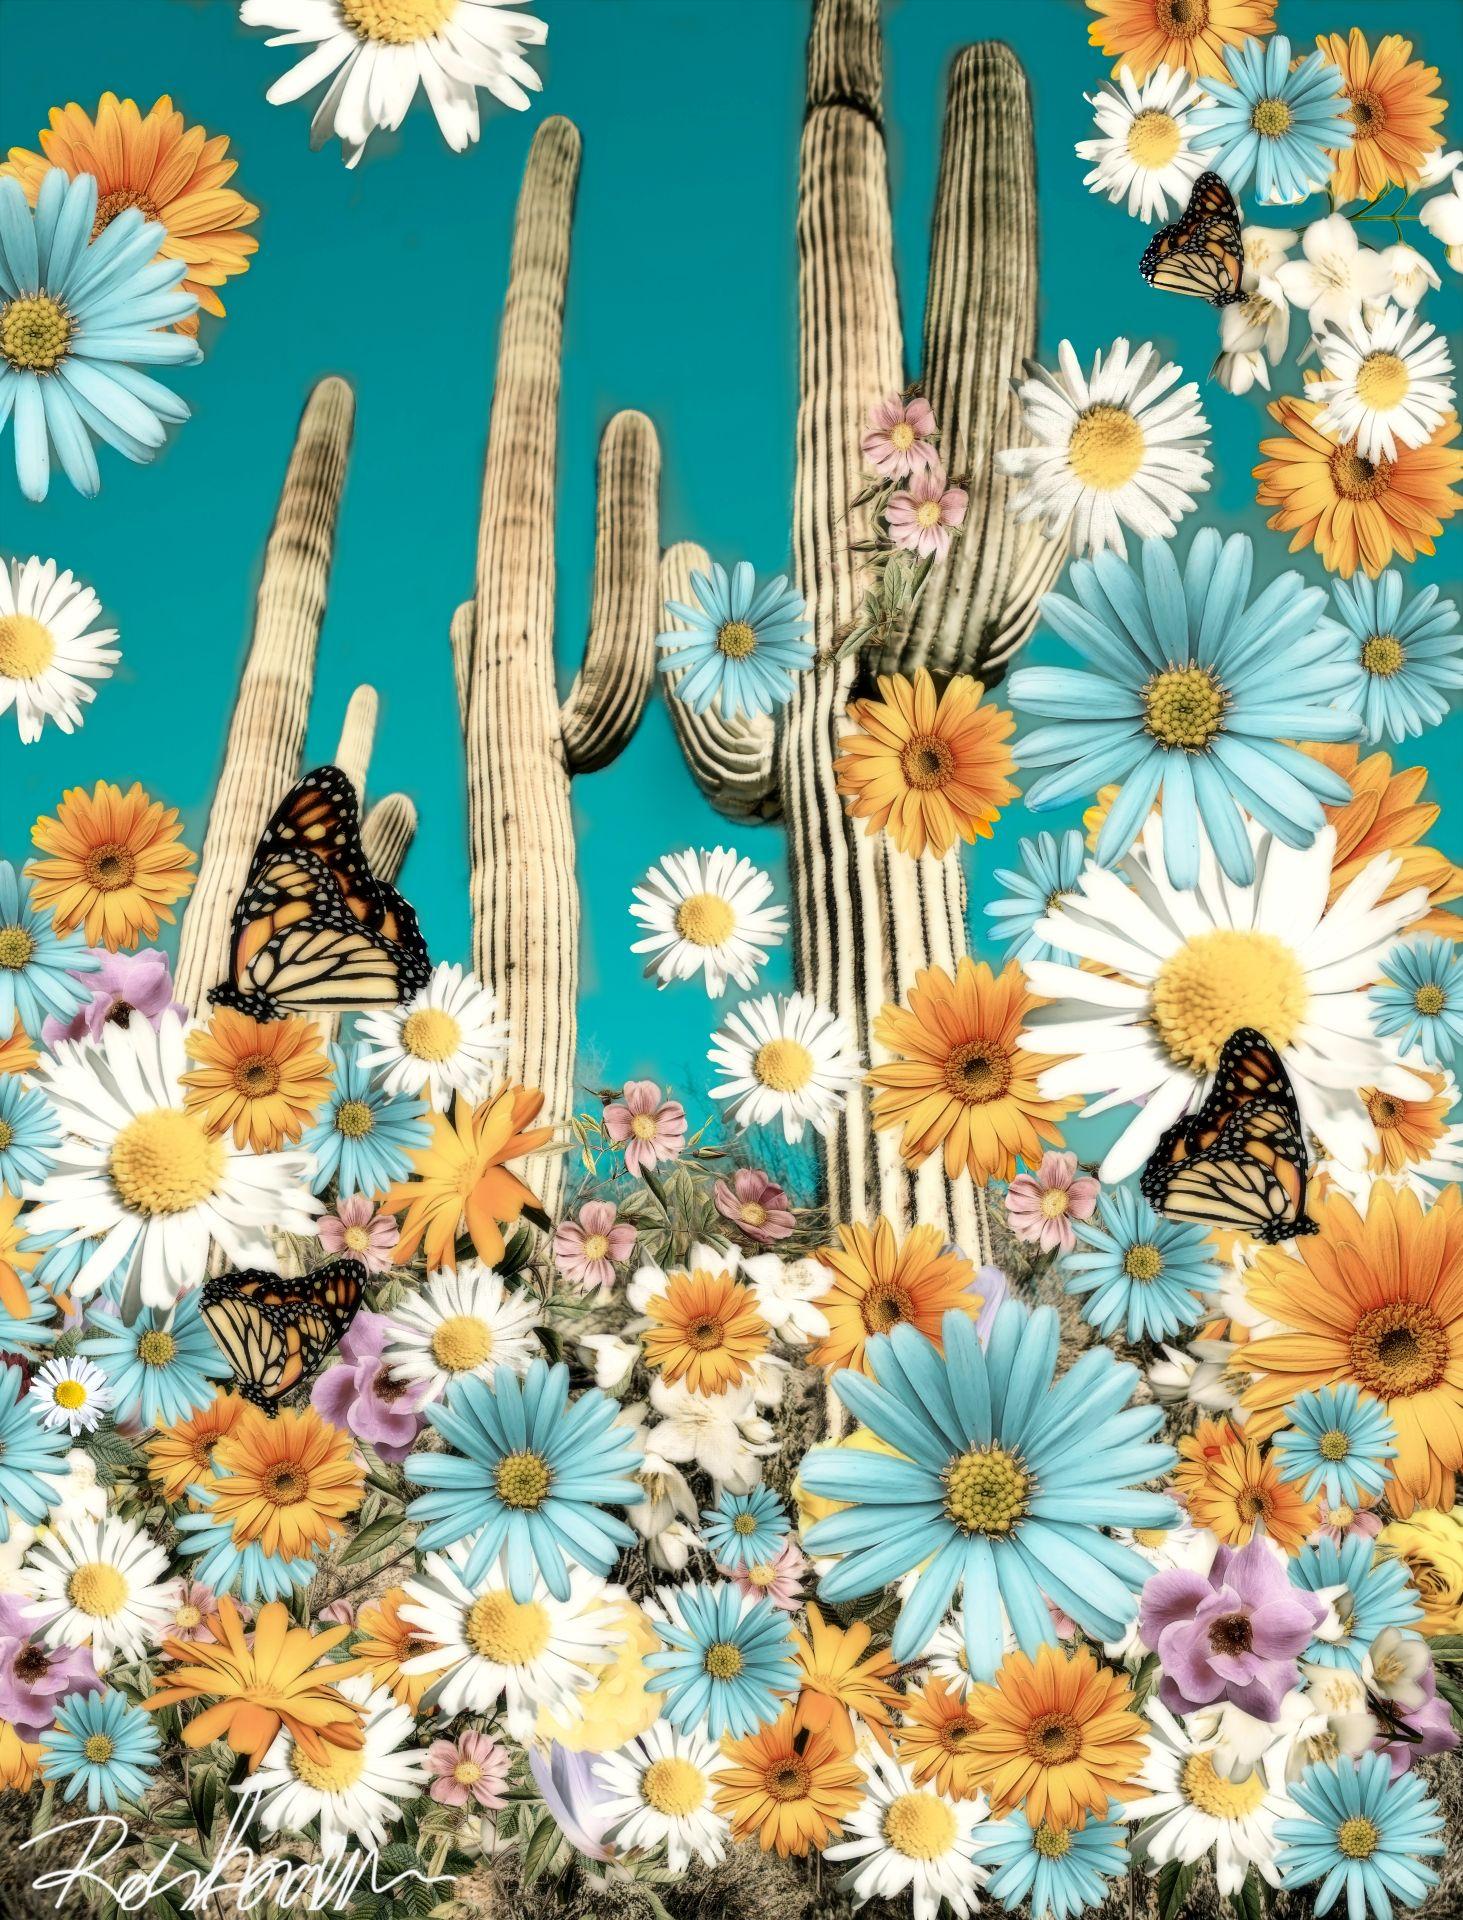 Desert Blooms, Digital on Canvas - Print by Robin Jorgensen